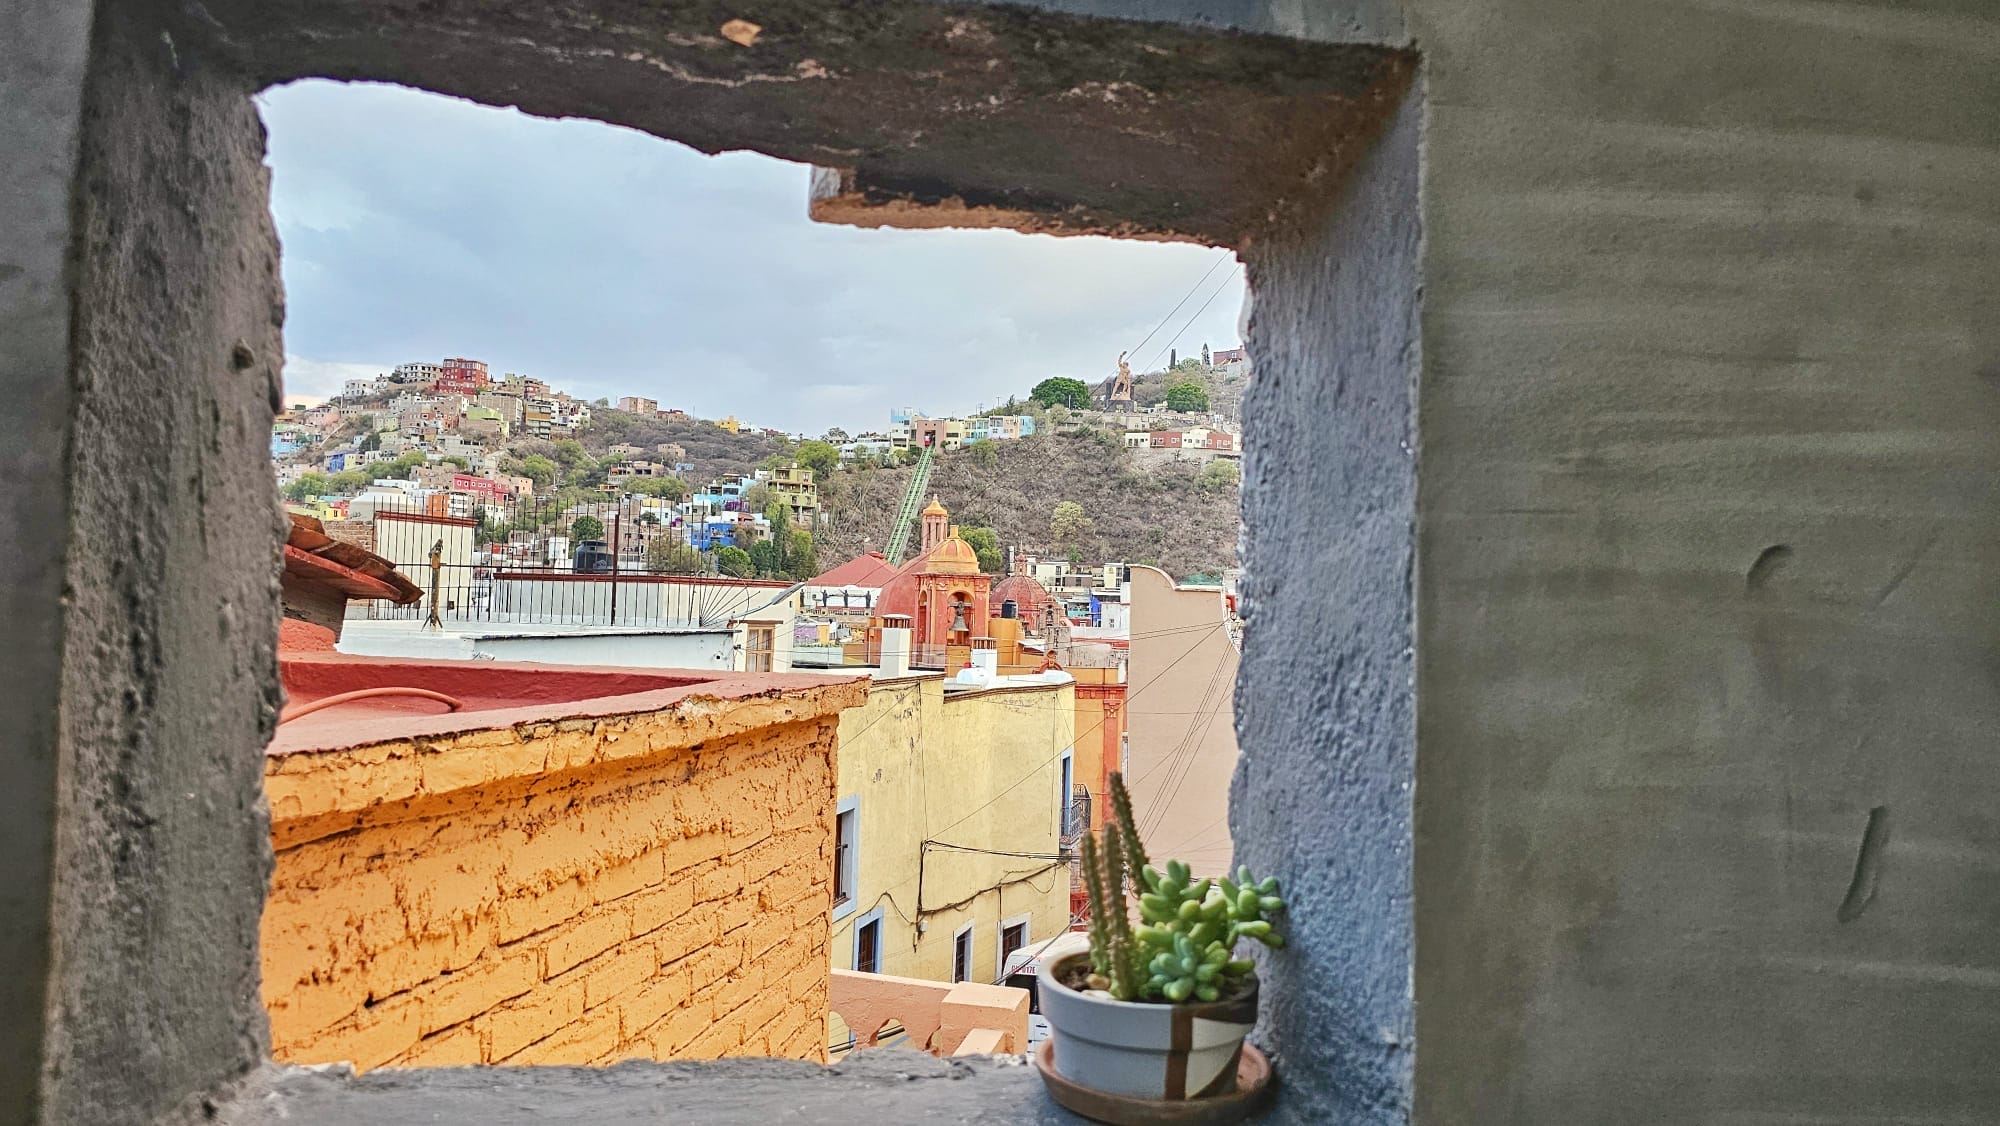 Guanajuato - view of Funicular